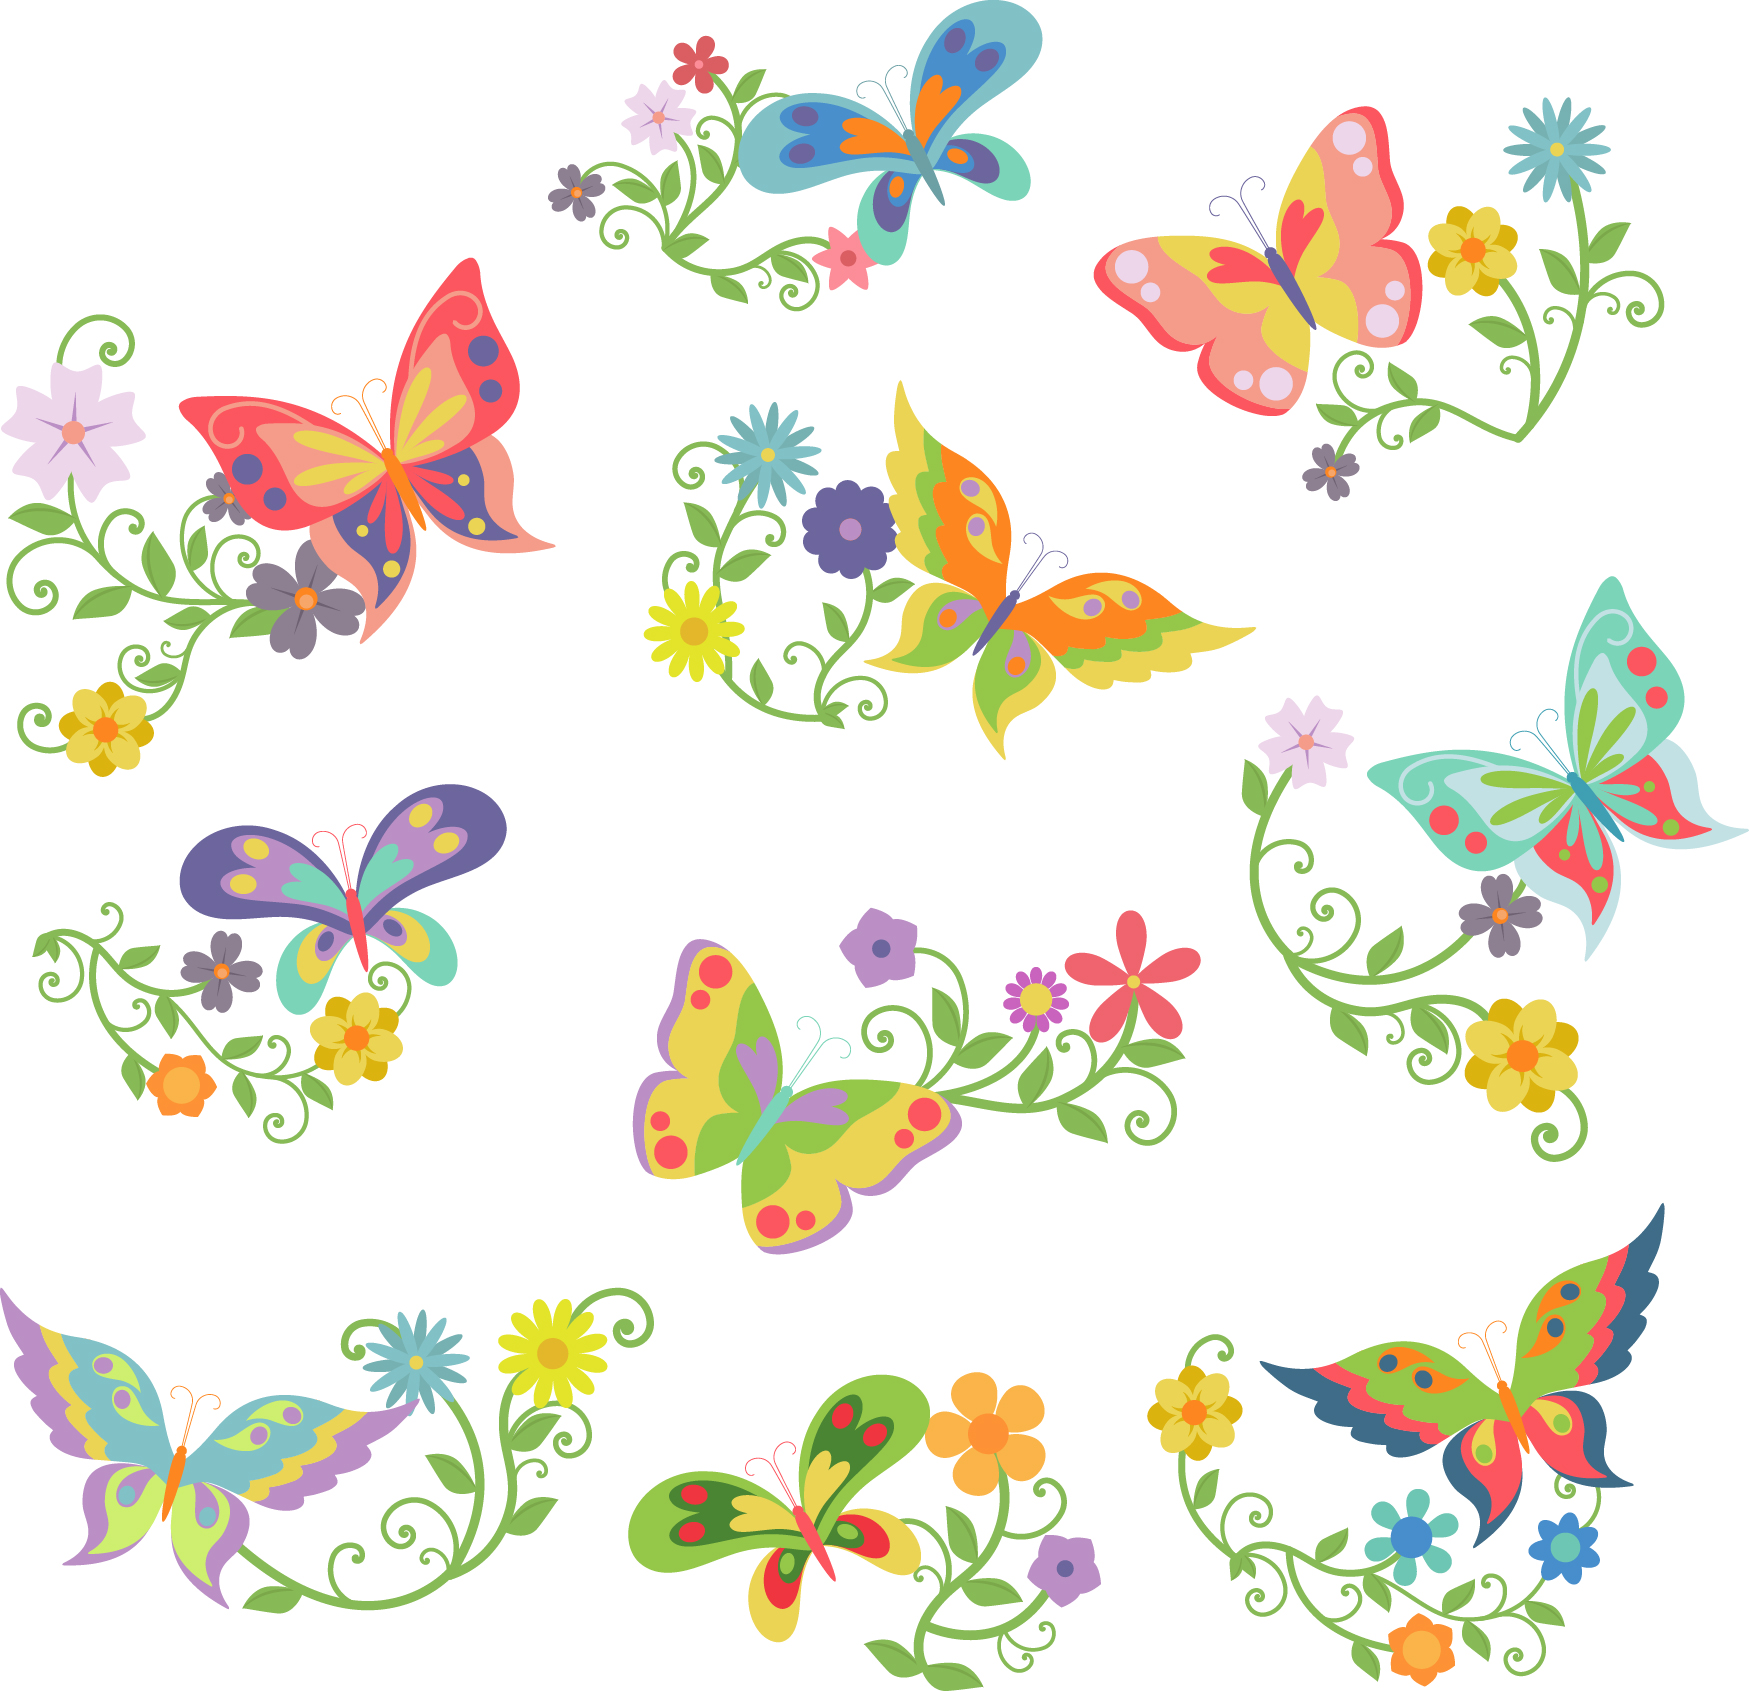 Мультяшные цветочки и бабочки